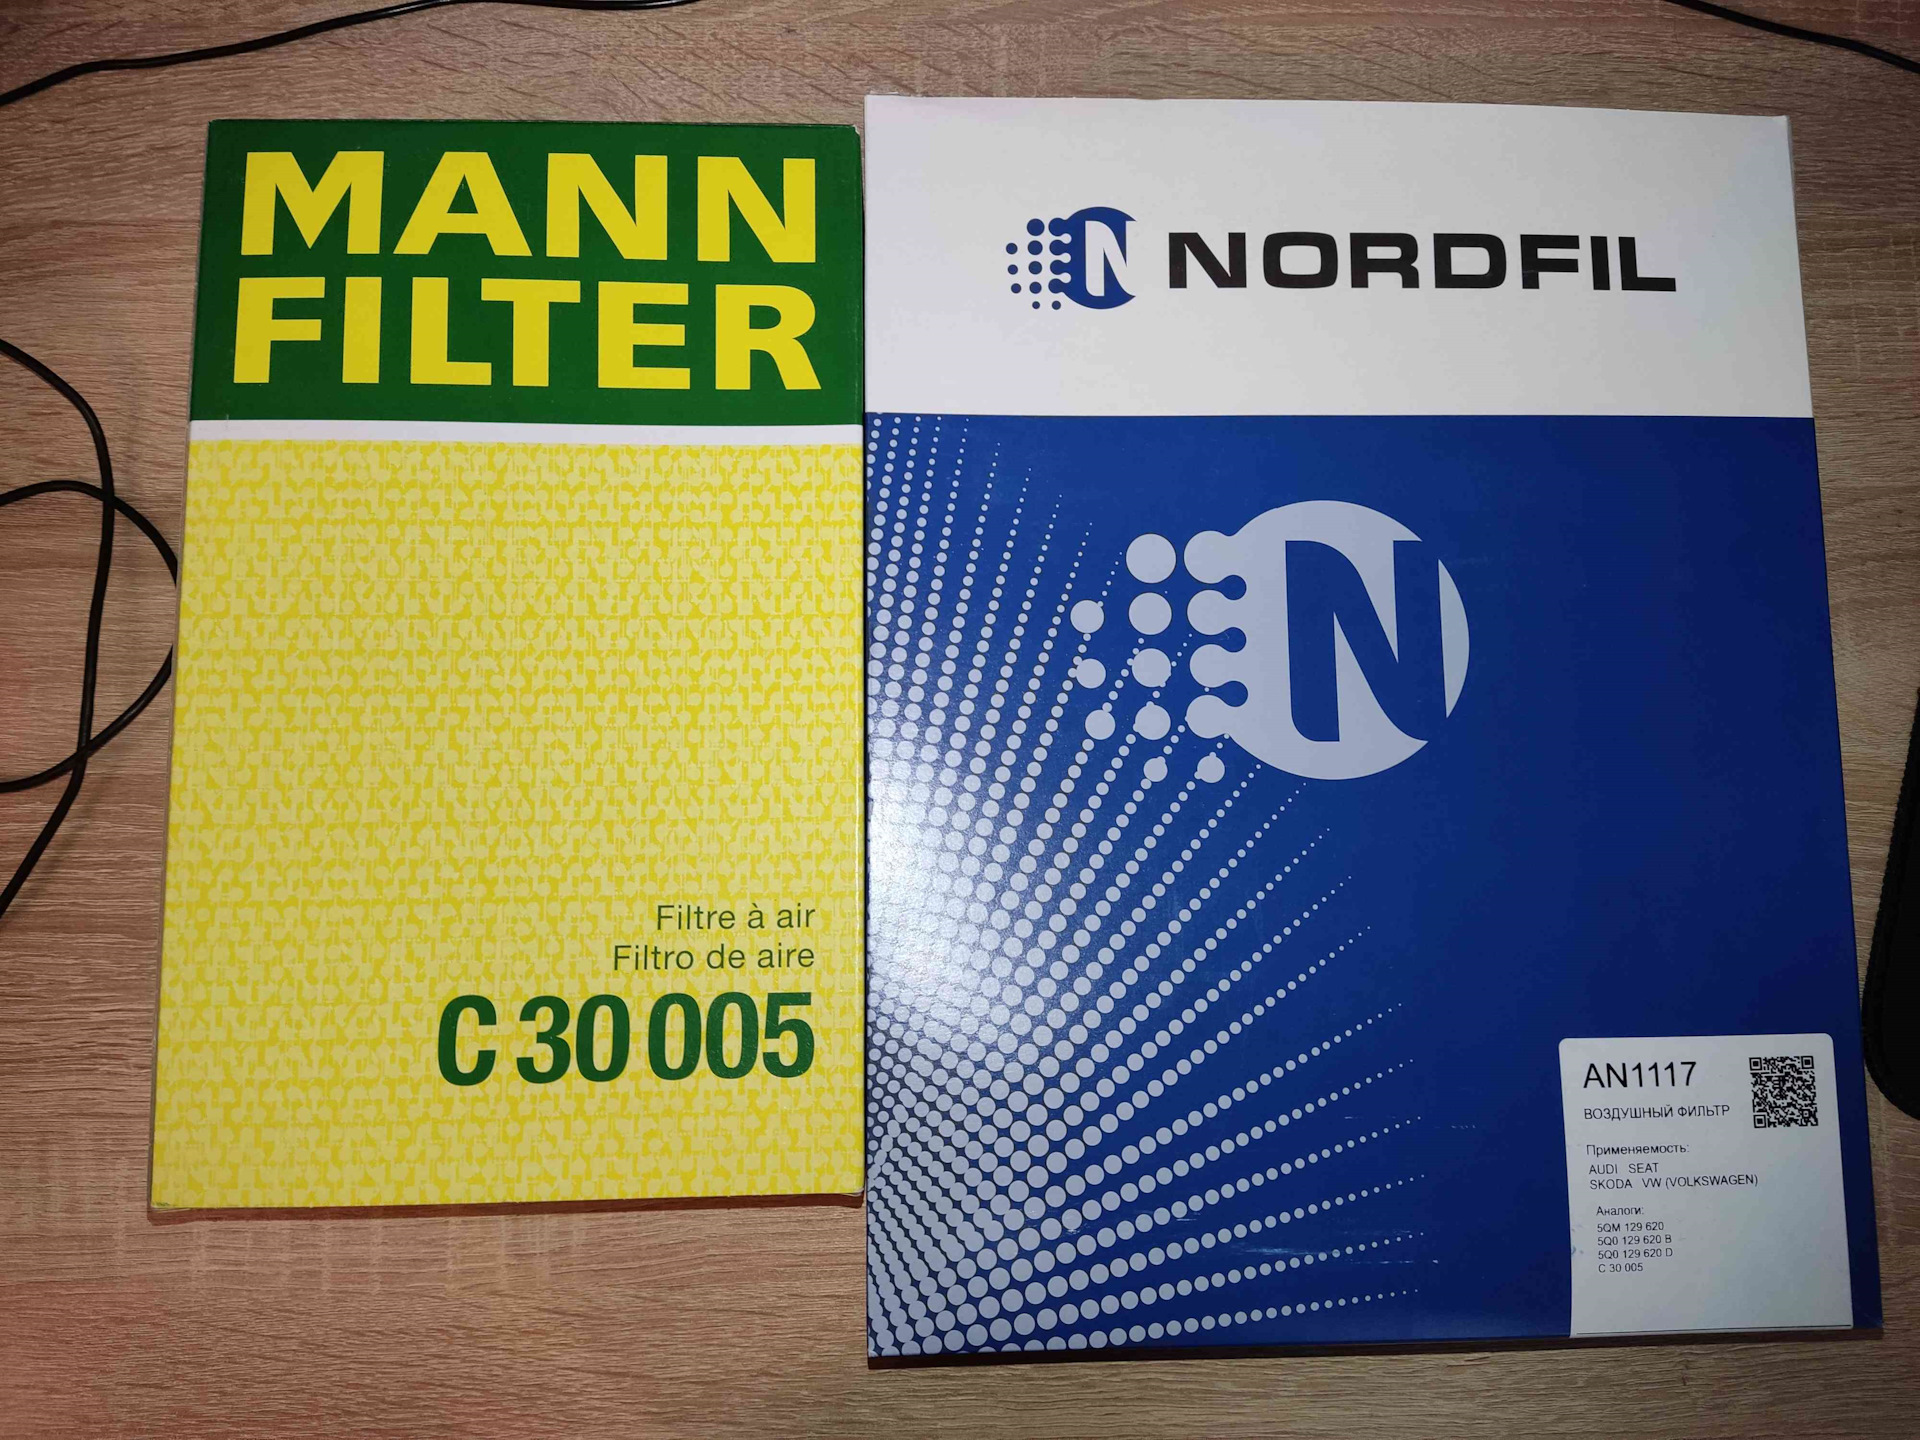 Nordfil. Воздушный фильтр NORDFIL. An1117 фильтр. An1117 NORDFIL. Нордфил.